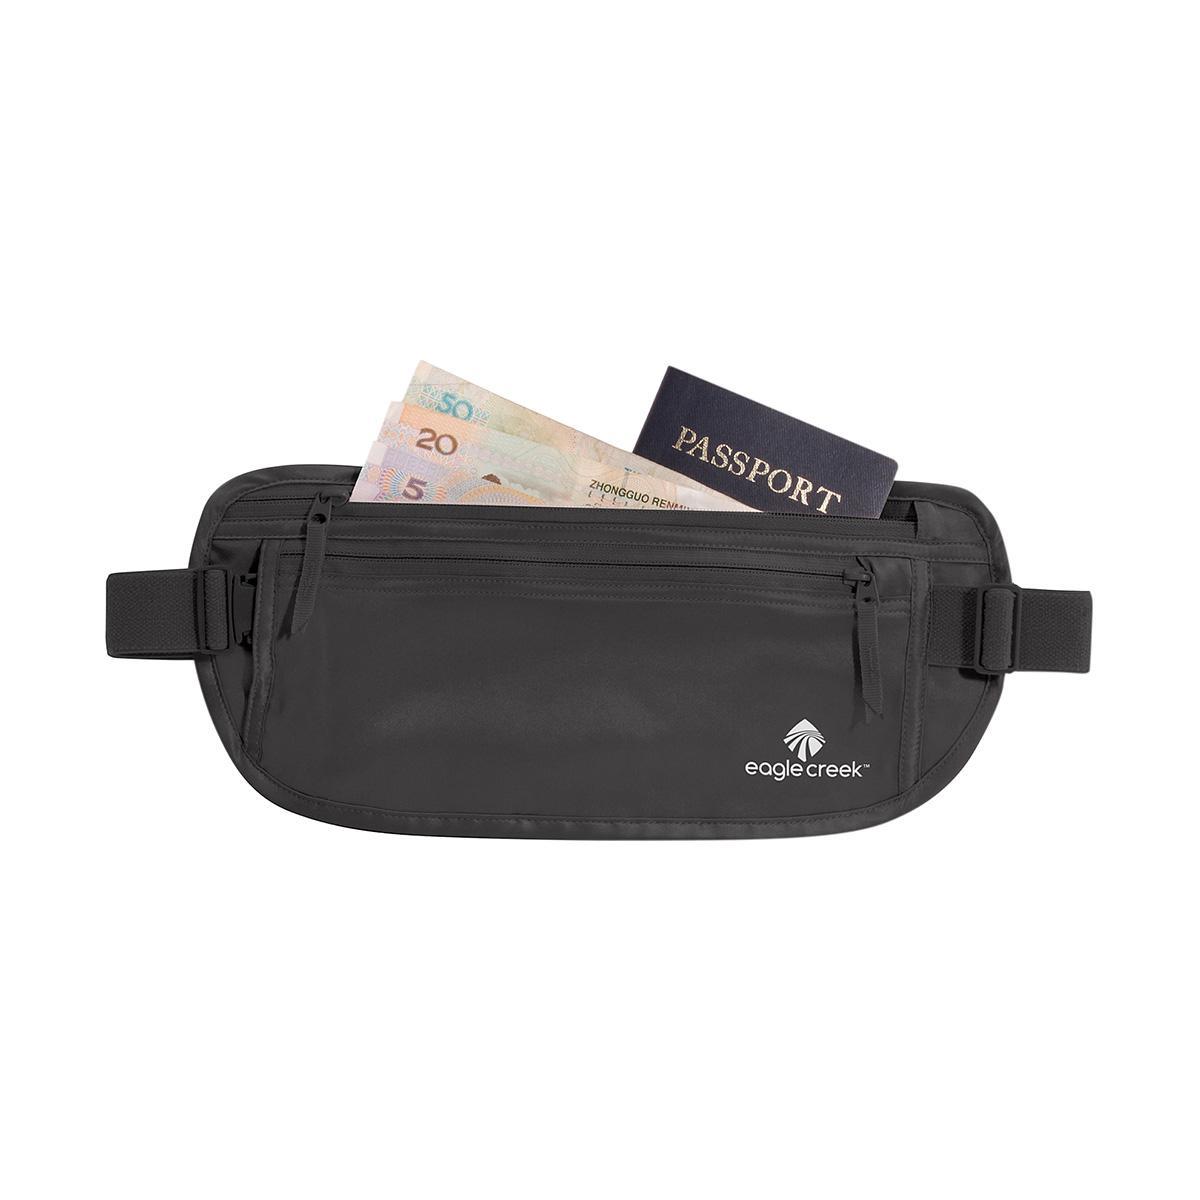 Waist or Hip Leather Bag Black Fanny Pack Travel Money Belt 